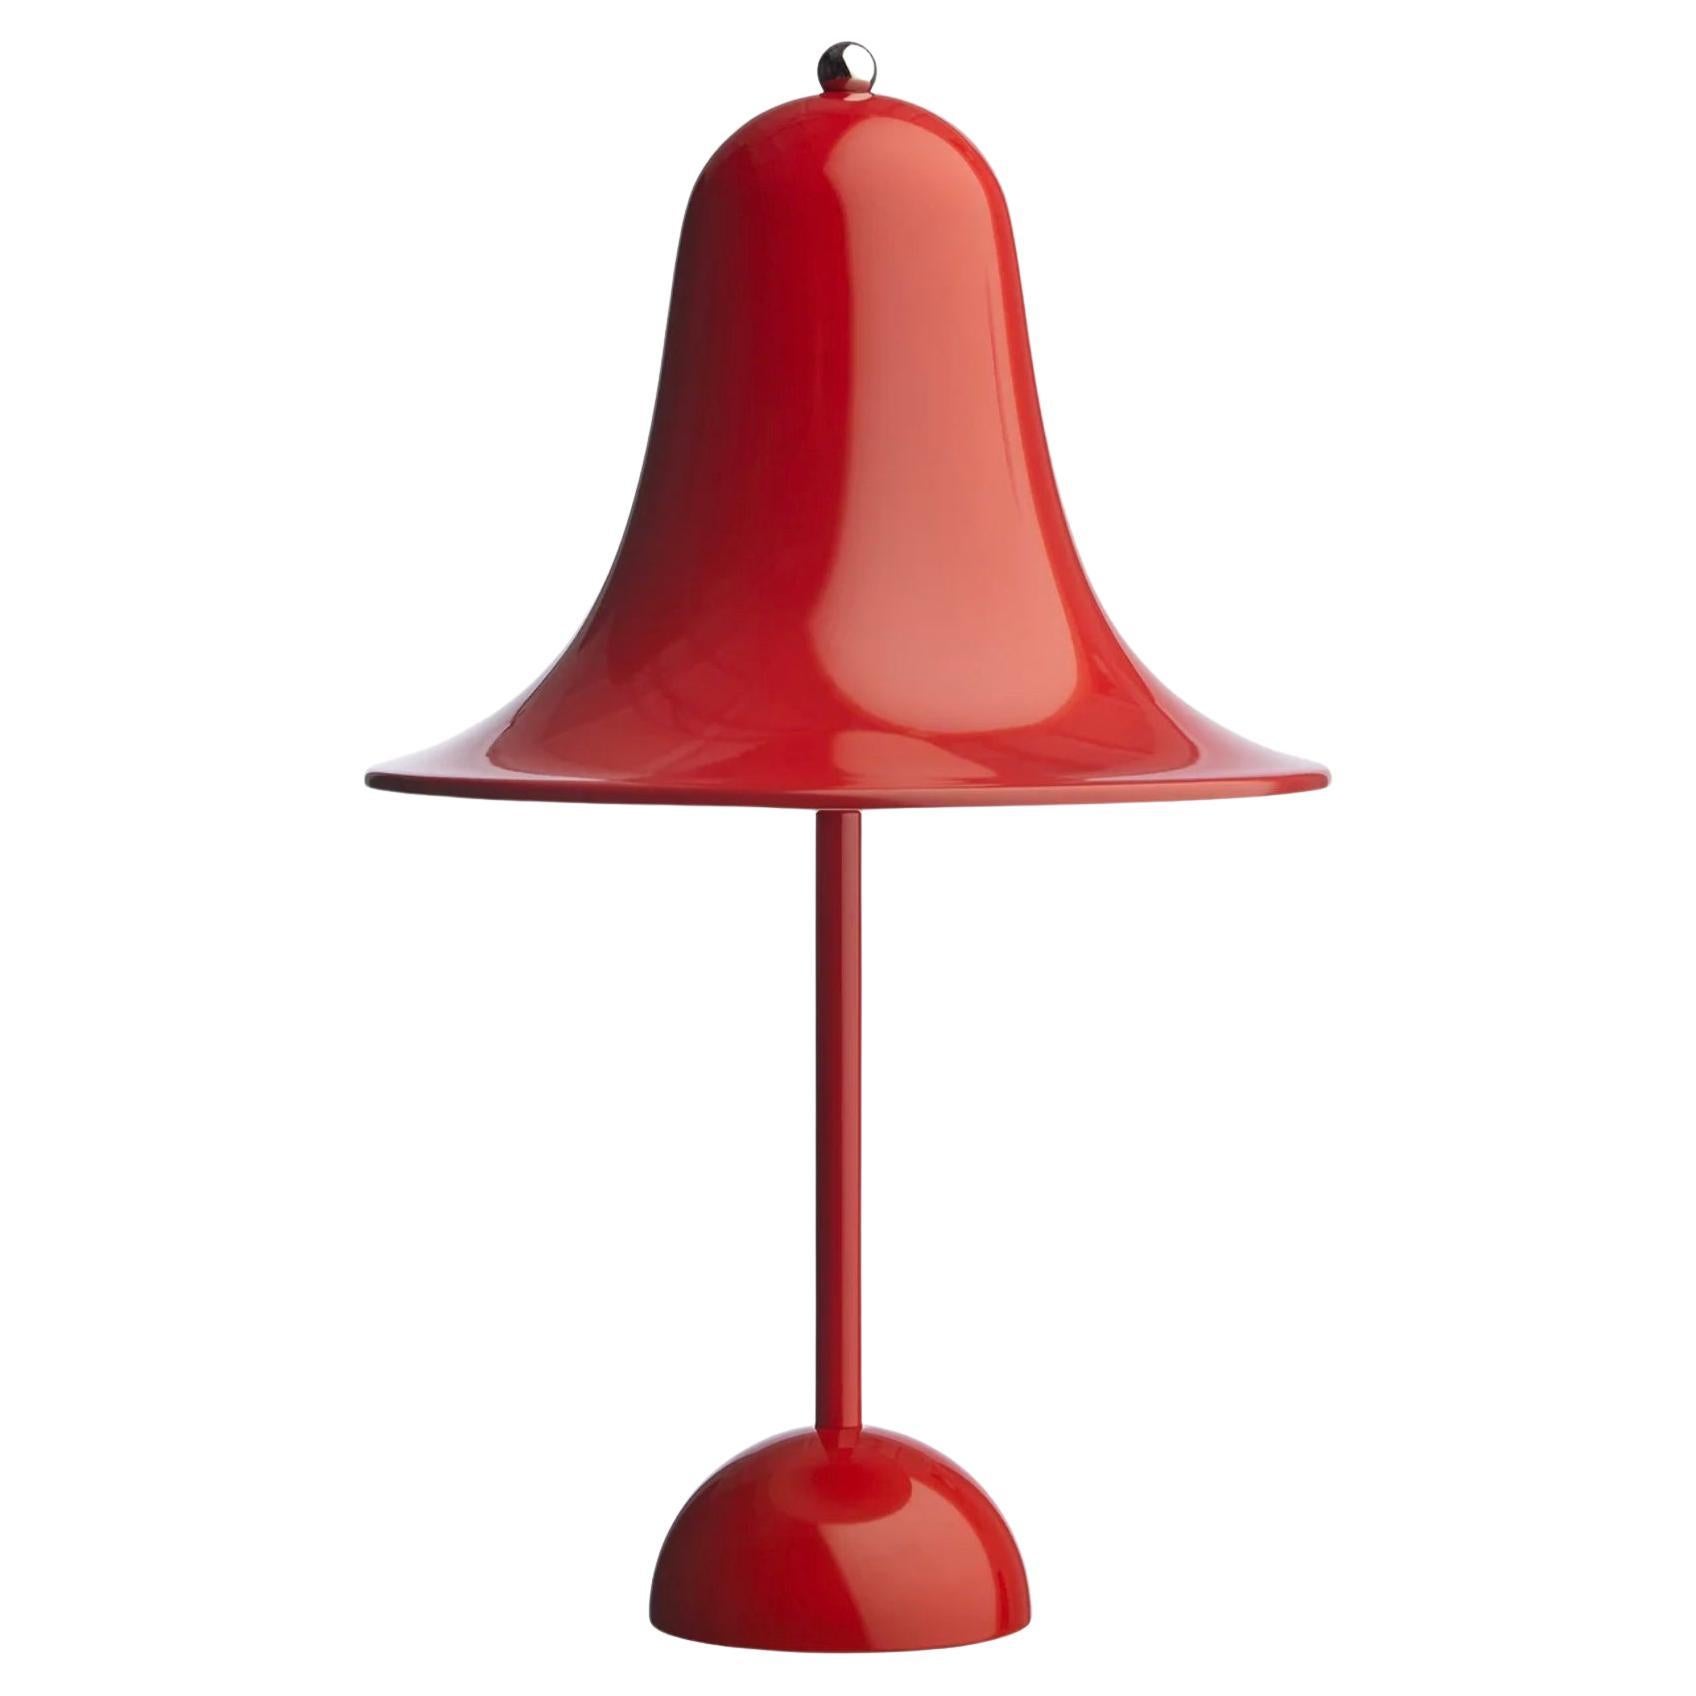 Verner Panton 'Pantop' Table Lamp in 'Bright Red' 1980 for Verpan